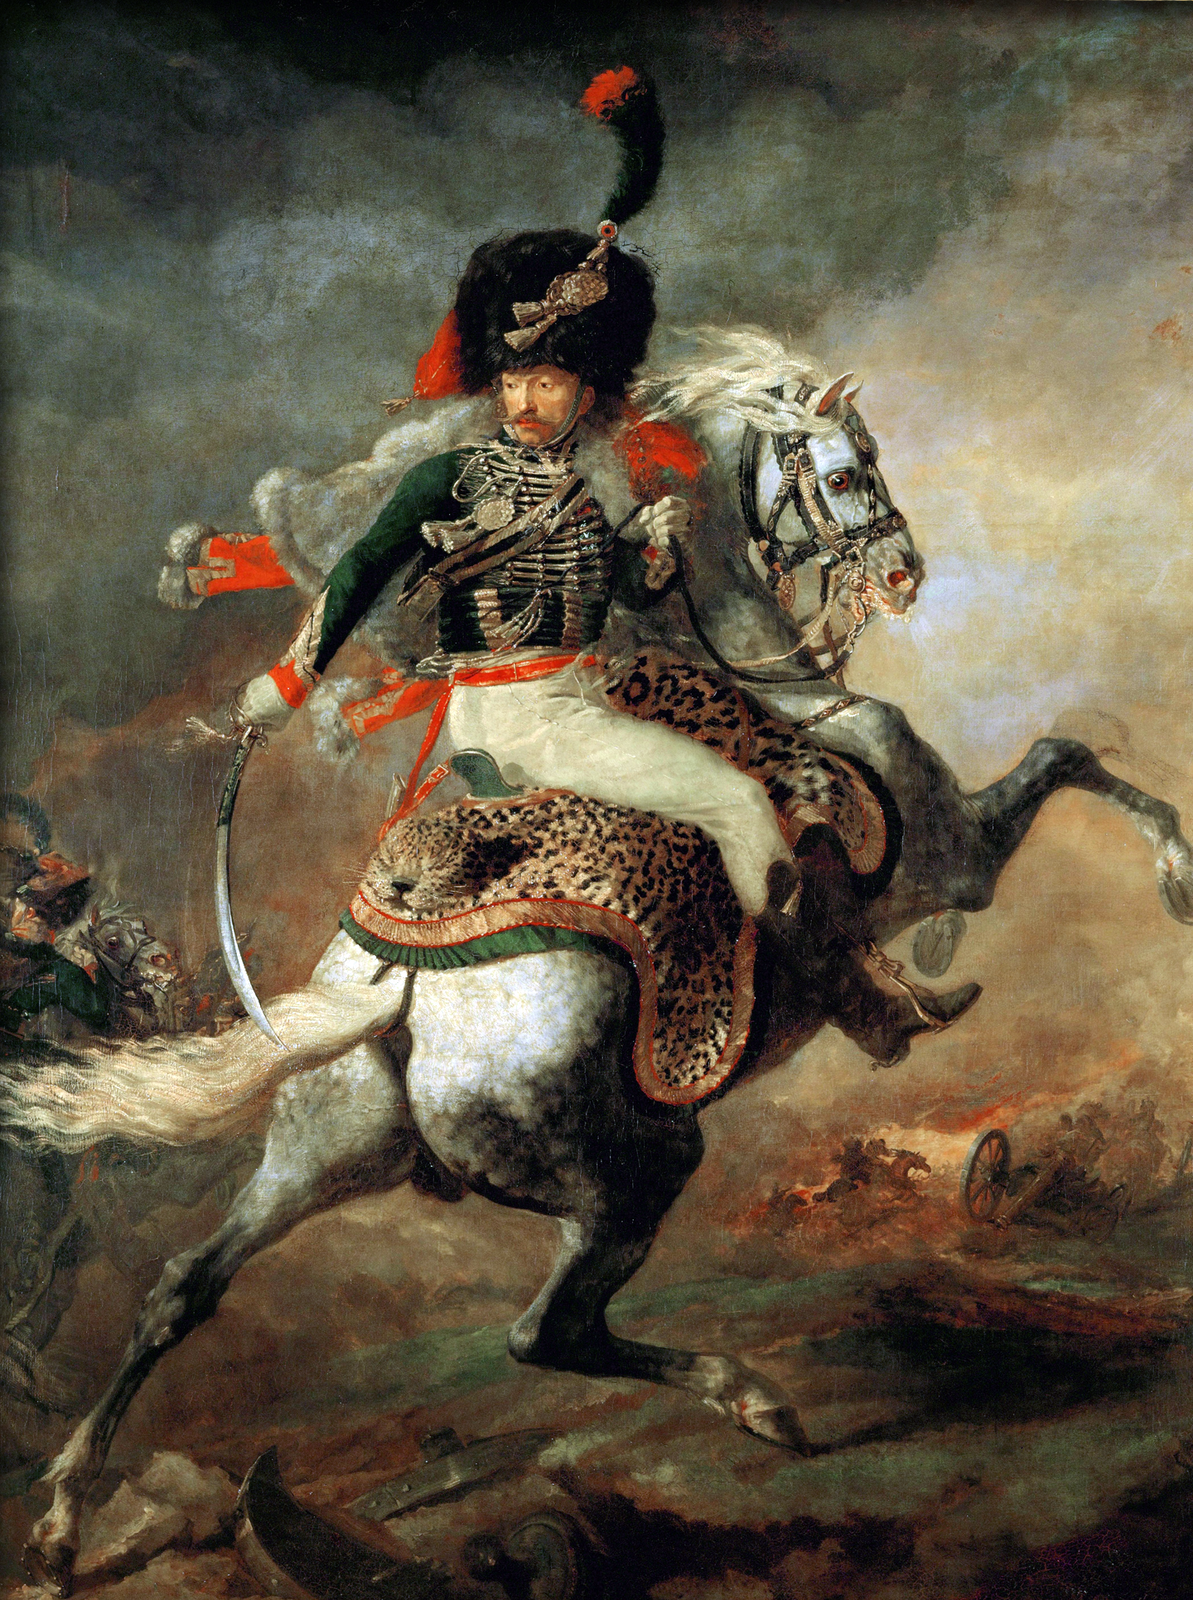 Ilustracja przedstawia obraz Théodore'a Géricaulta „Oficer szaserów". Dzieło przedstawia żołnierza jadącego na białym koniu. Na głowie ma dużą czarną czapkę, zieloną marynarkę, białe spodnie i buty sięgające łydki. Głowę ma obróconą do tyłu, ma poważną twarz, a w prawej ręce trzyma szable opuszczoną ku dołowi. Siedzi w siodle, pod którym jest skóra dzikiego kota. Koń zrywa się do jazdy i ma uniesione przednie kopyta w górze. Jest biały z nakrapianymi szarymi małymi plamkami i ma białą grzywę. W tle widać bitwę, kilku żołnierzy i armaty. Tło jest szare, ale w centralnej części widać blask słońca.